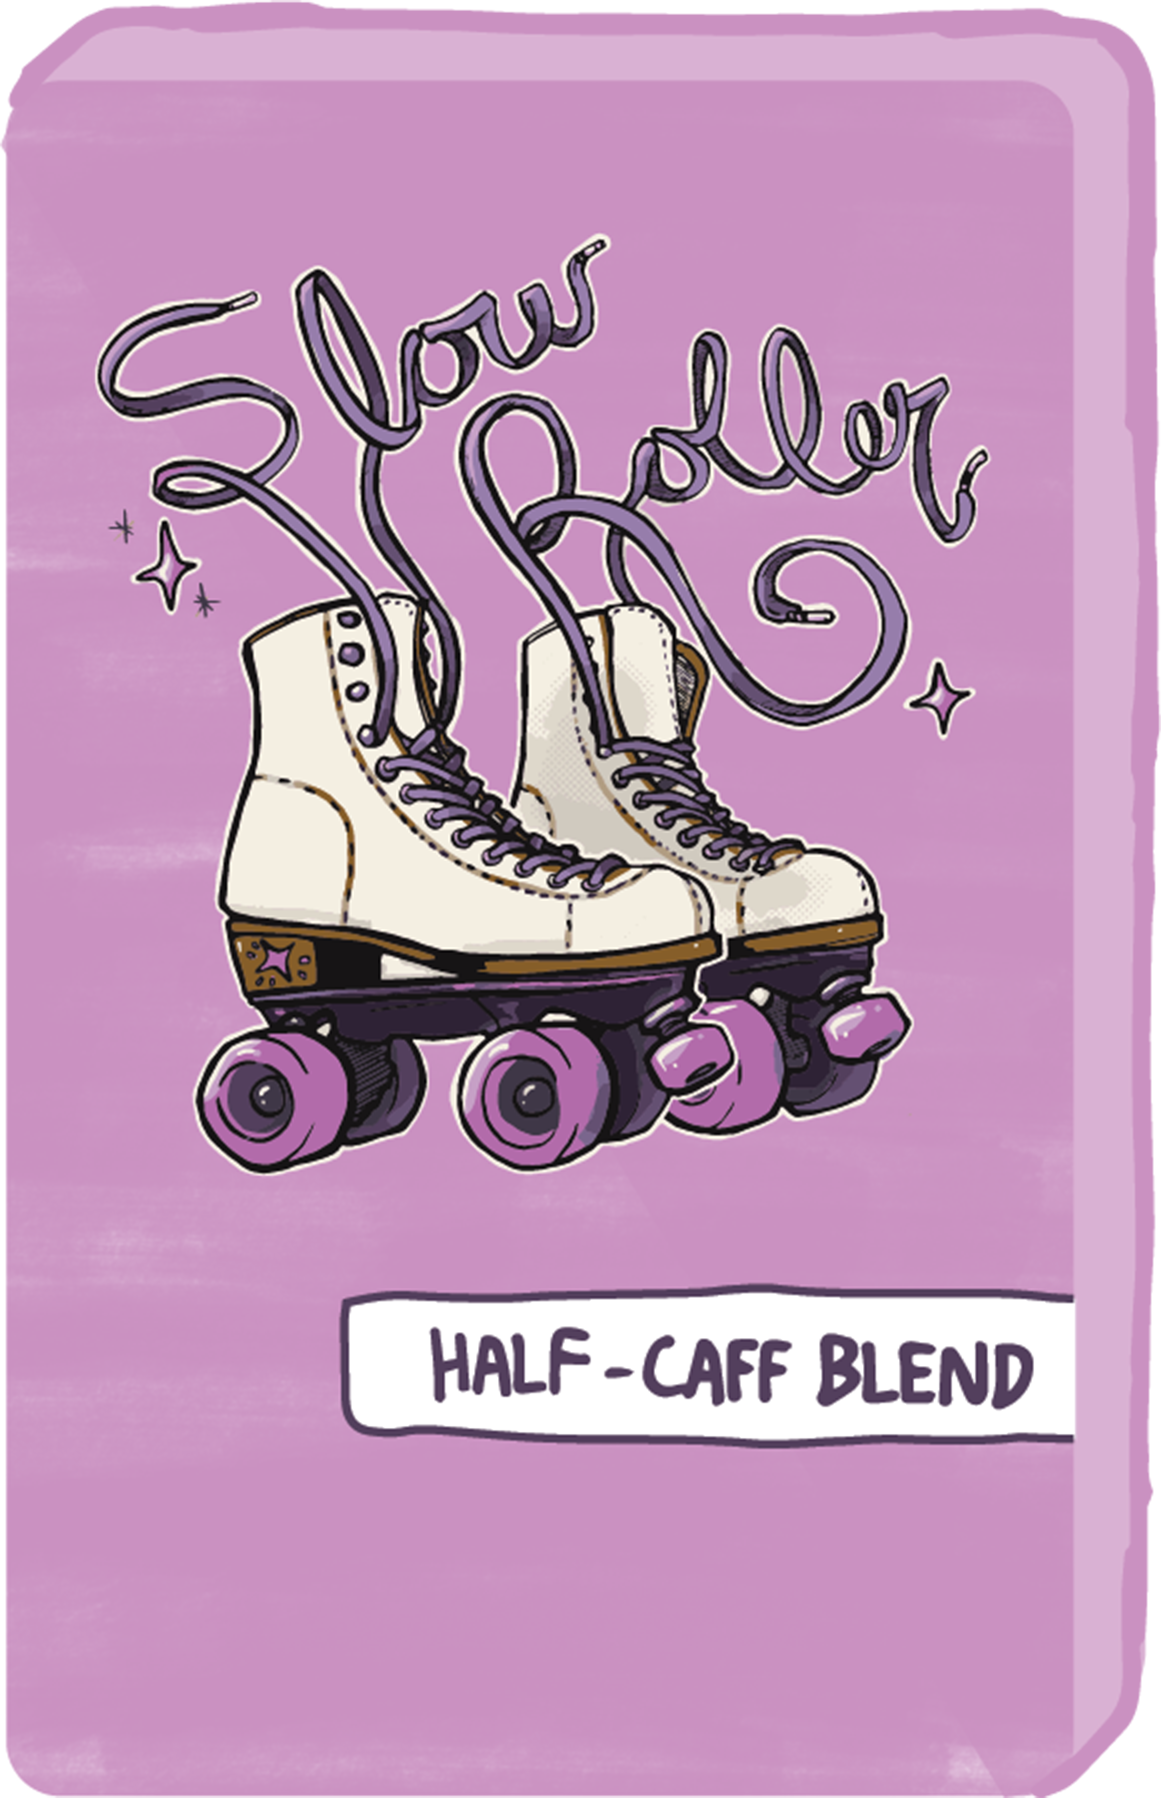 SLOW ROLLER HALF-CAFF